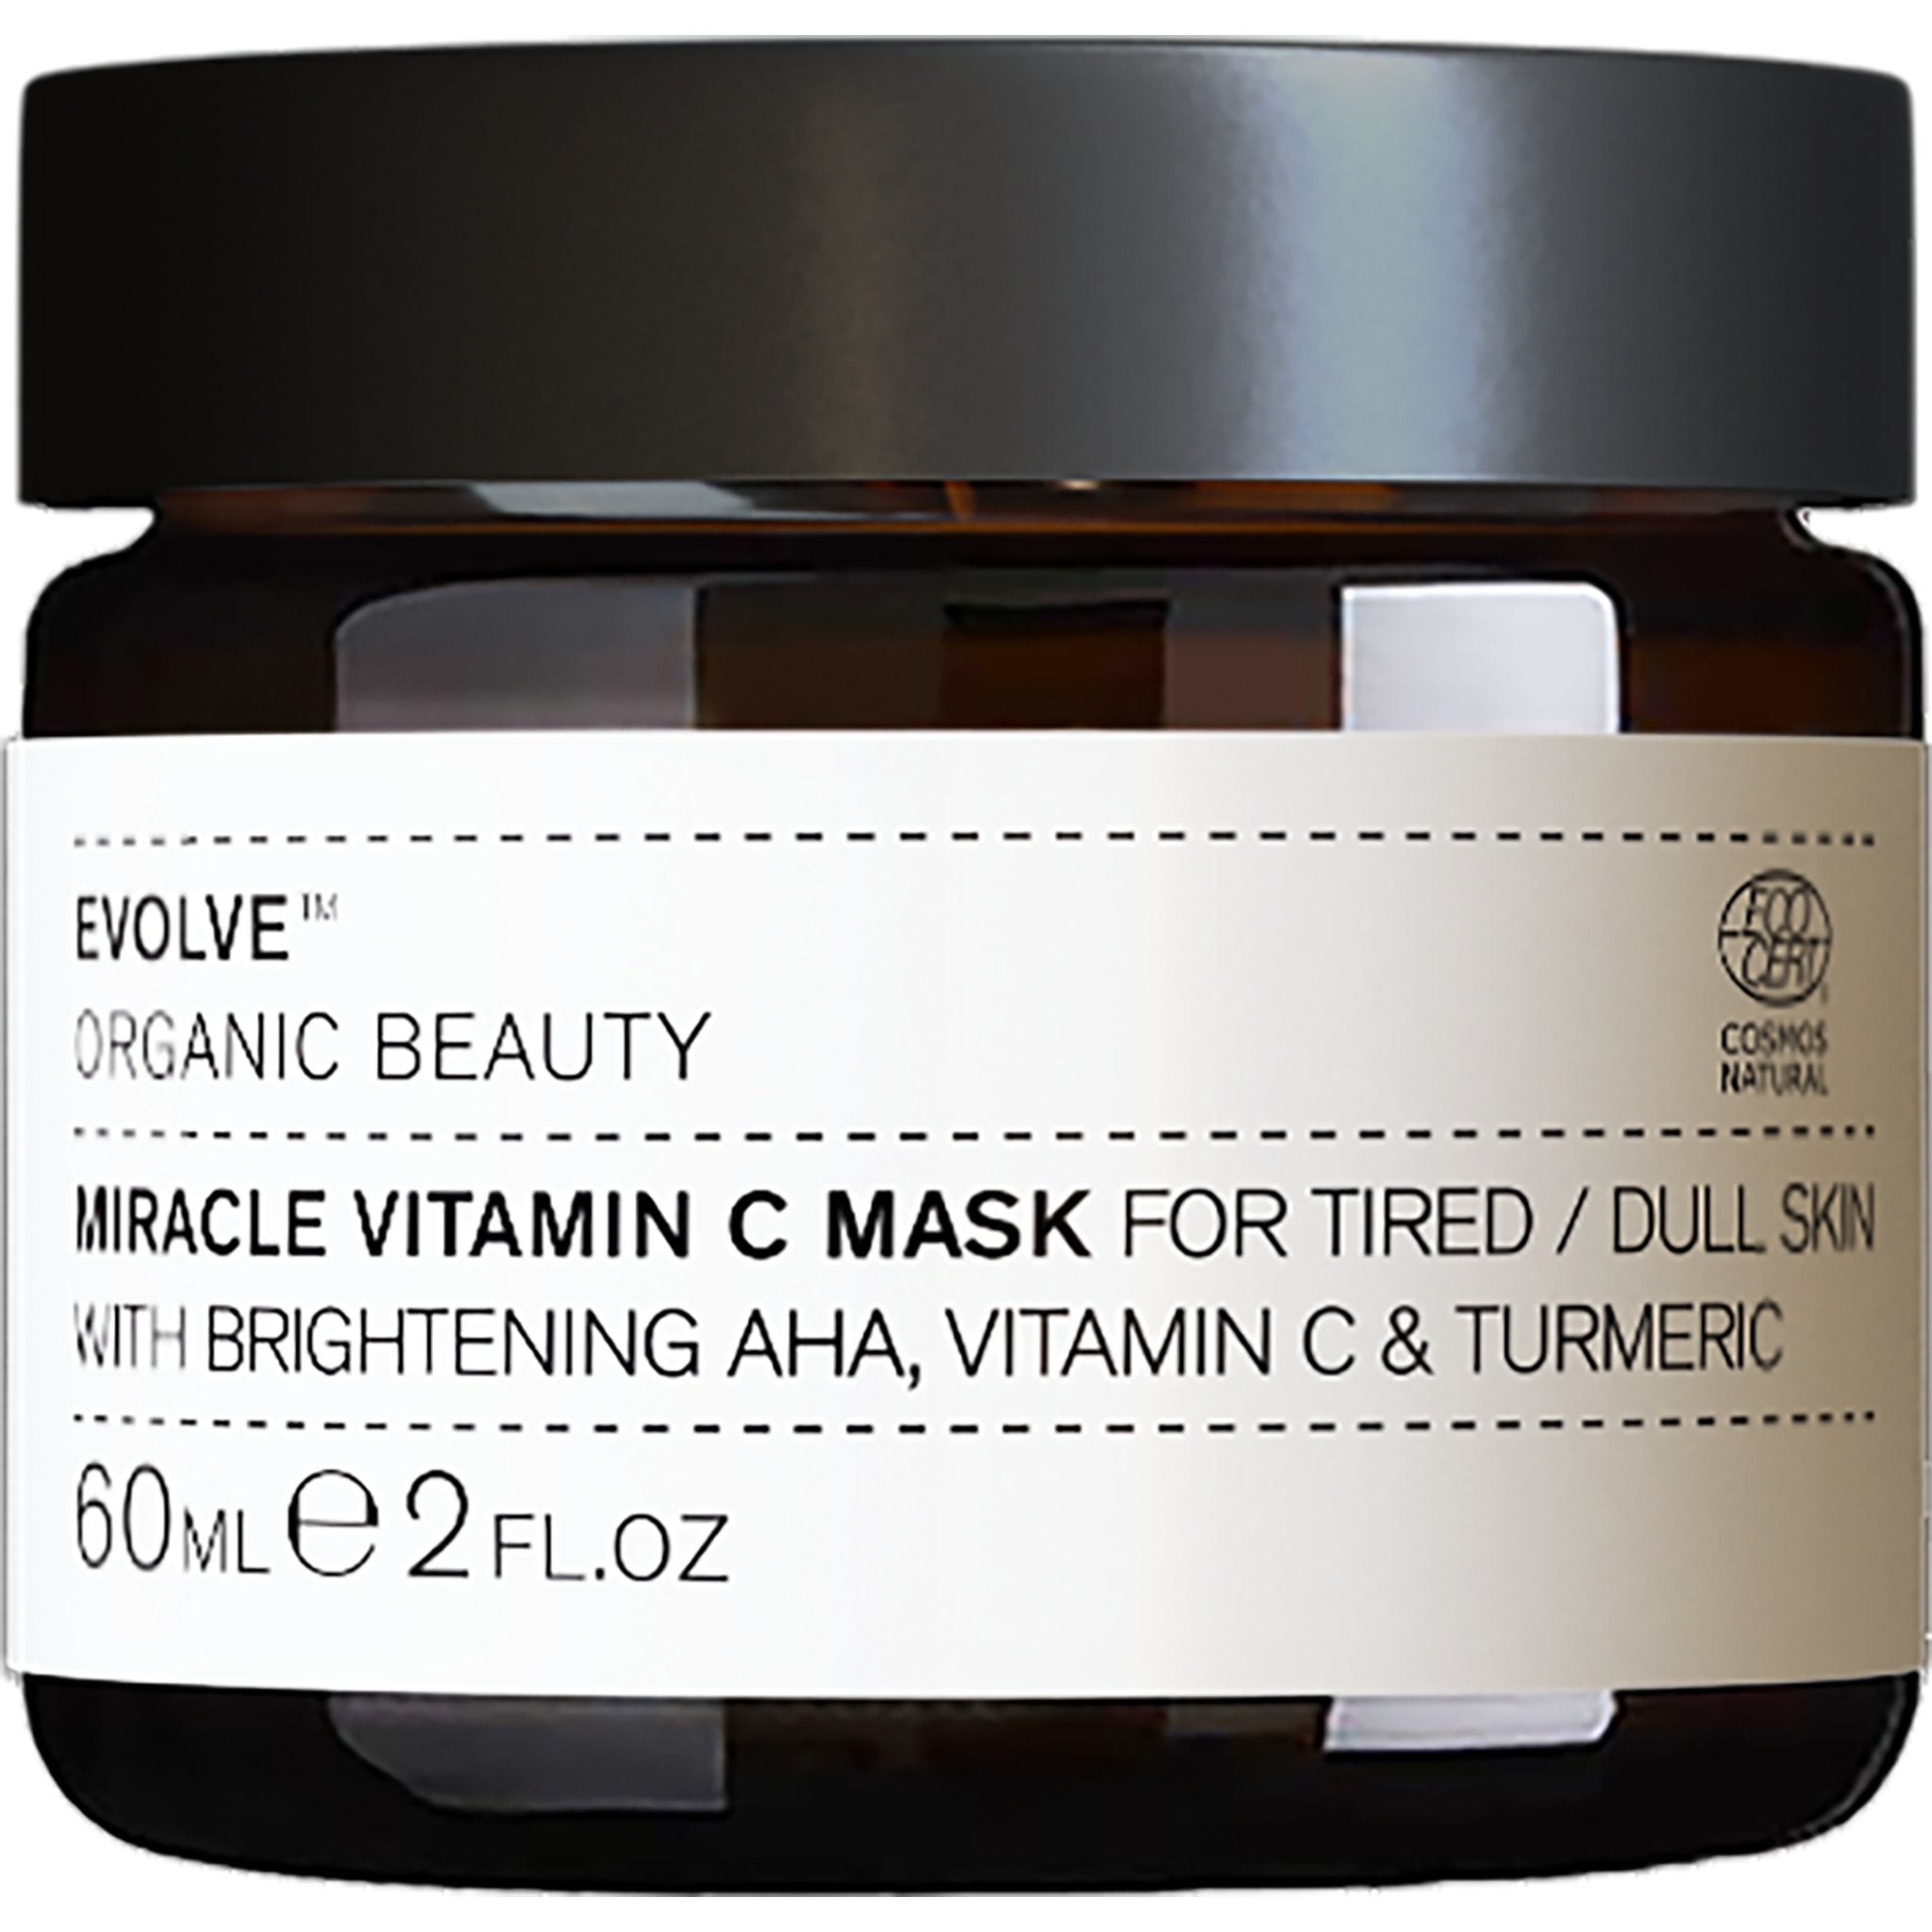 -Miracle + Vitamin C Mask